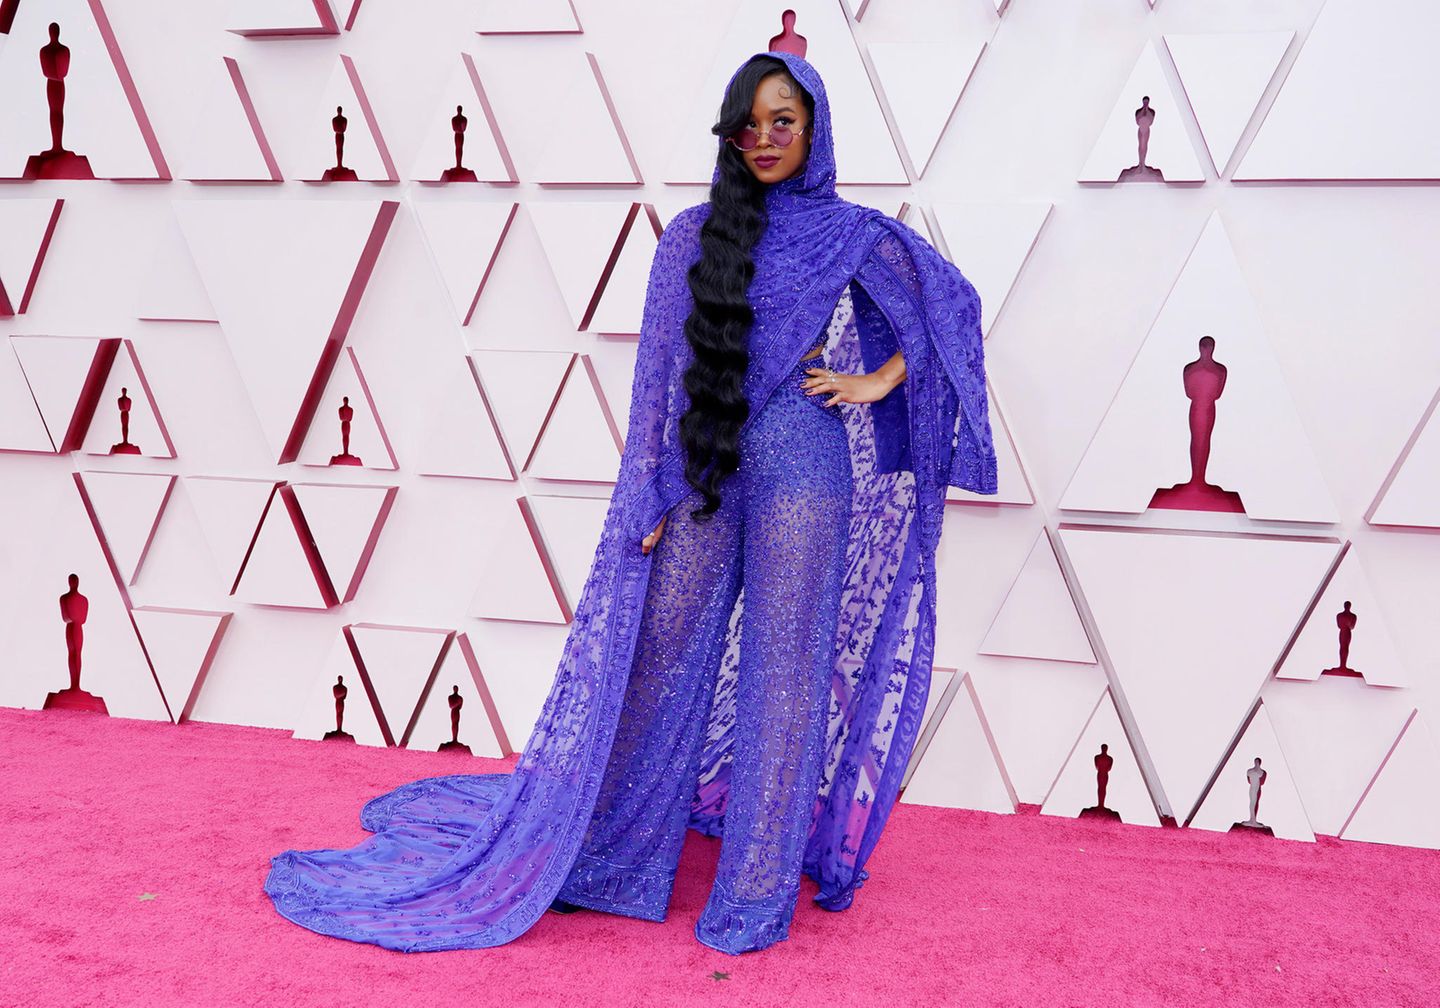 Dieser Look ist nicht für jeden geeignet, H.E.R kann ihn aber definitiv tragen. Die königsblaue Spitzenkreation von Dundas macht den Red Carpet der Oscars 2021 gleich ein bisschen cooler.